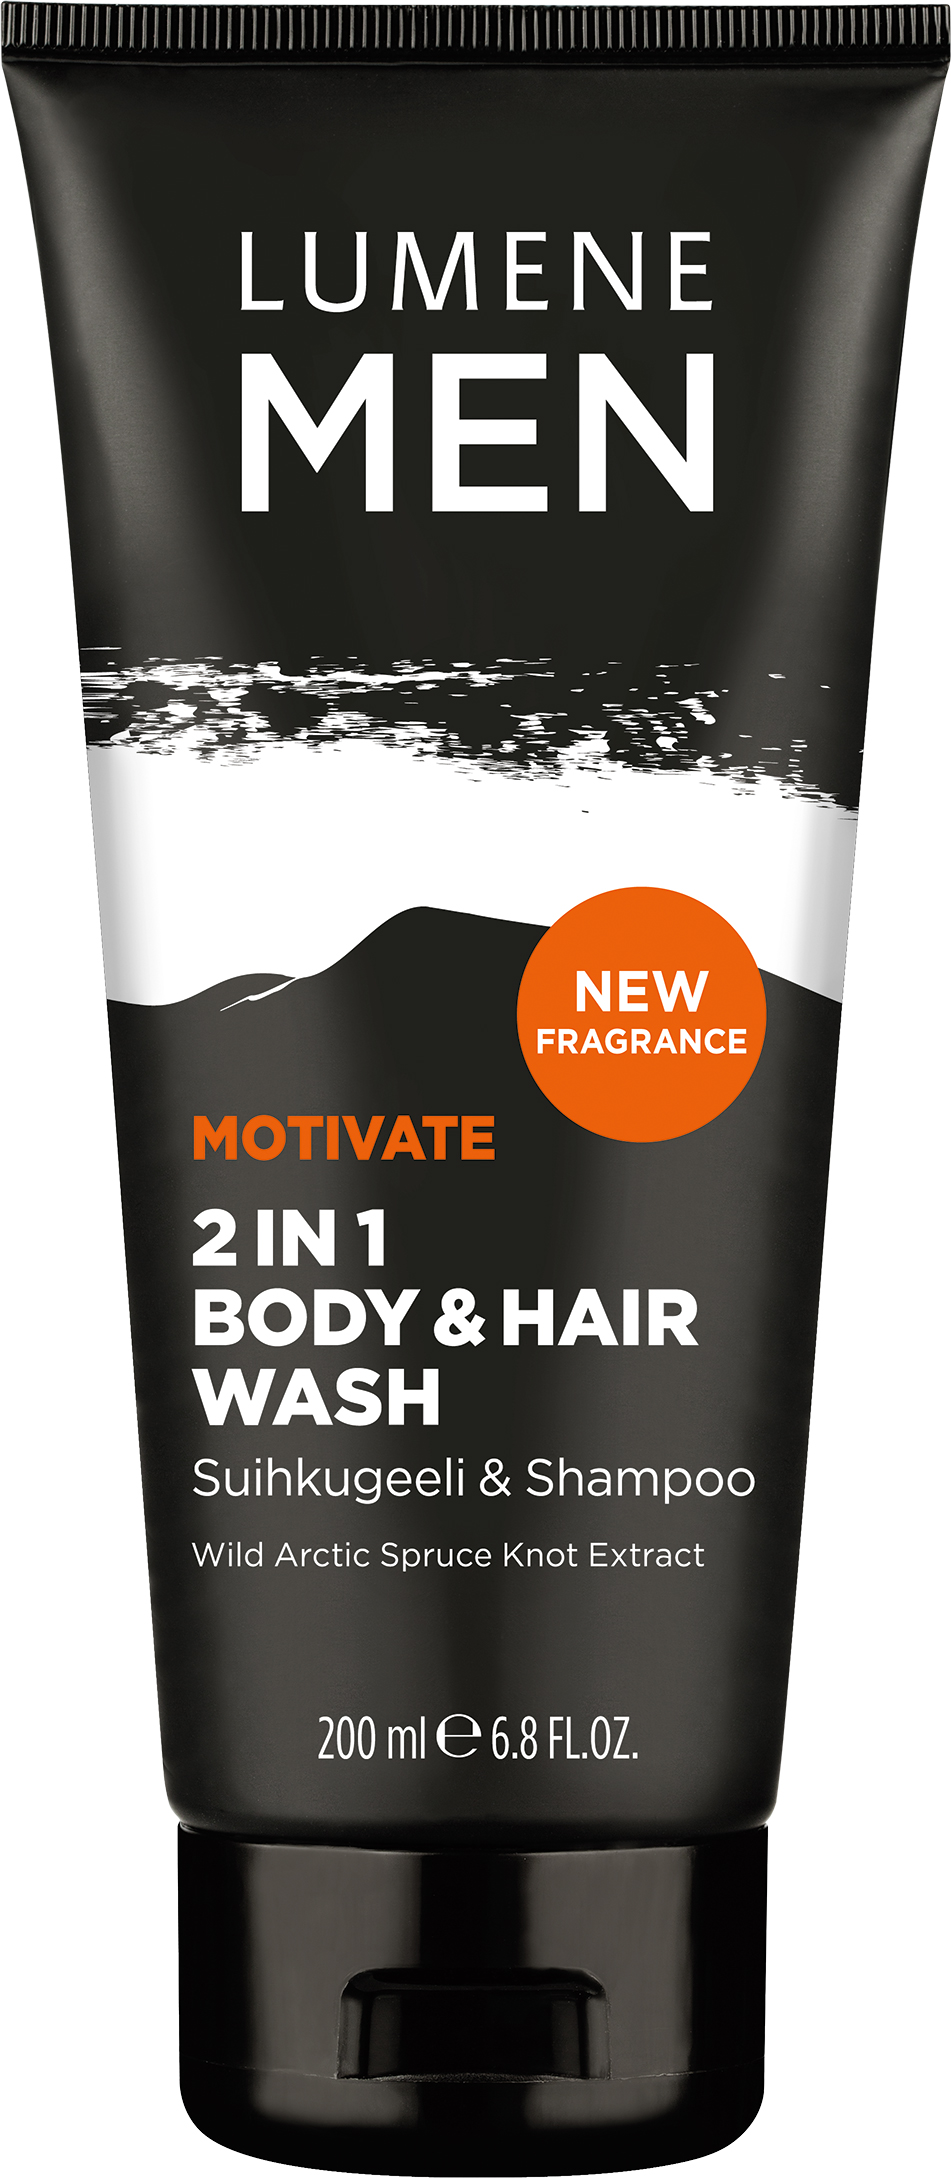 Lumene For Men Motivate 2 in 1 Body & Hair Wash 200ml